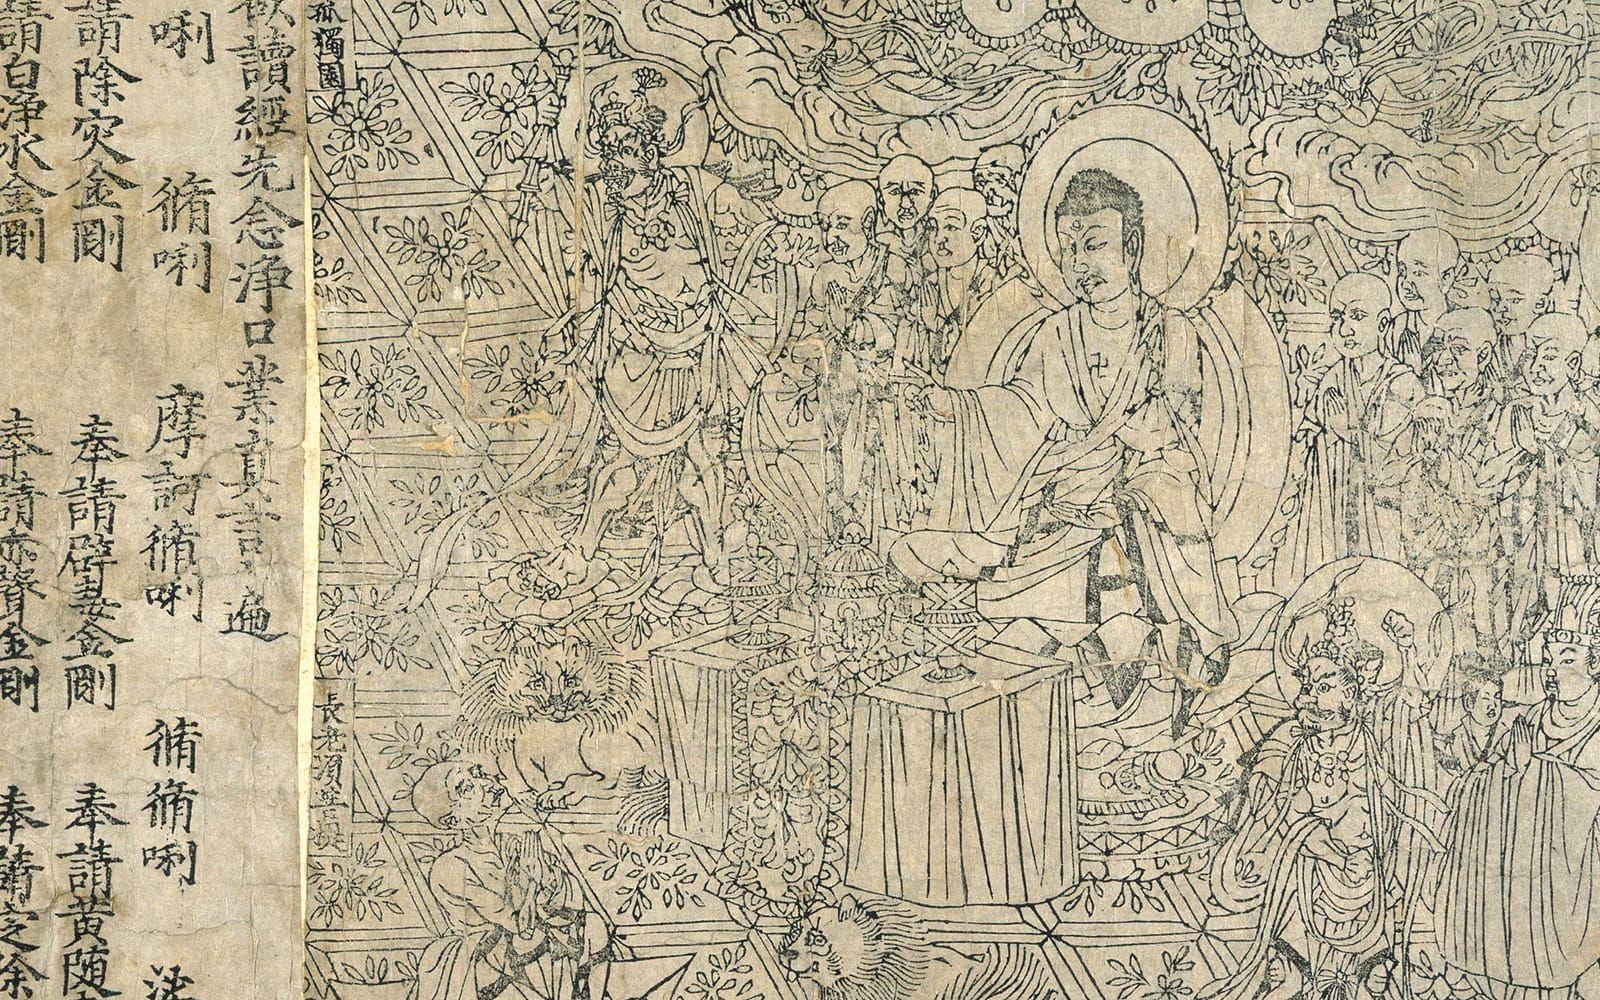 <strong>VÄRLDENS ÄLDSTA BOK. </strong> Diamant-sutra hittades av en munk i Magaogrottorna i Kina och är en del av ett större fynd om cirka 50.000 historiska manuskript. Diamant-sutra har daterats till 868 och tros vara världens äldsta tryckta bok. Det är närmare 600 år innan Gutenbergs bibel.